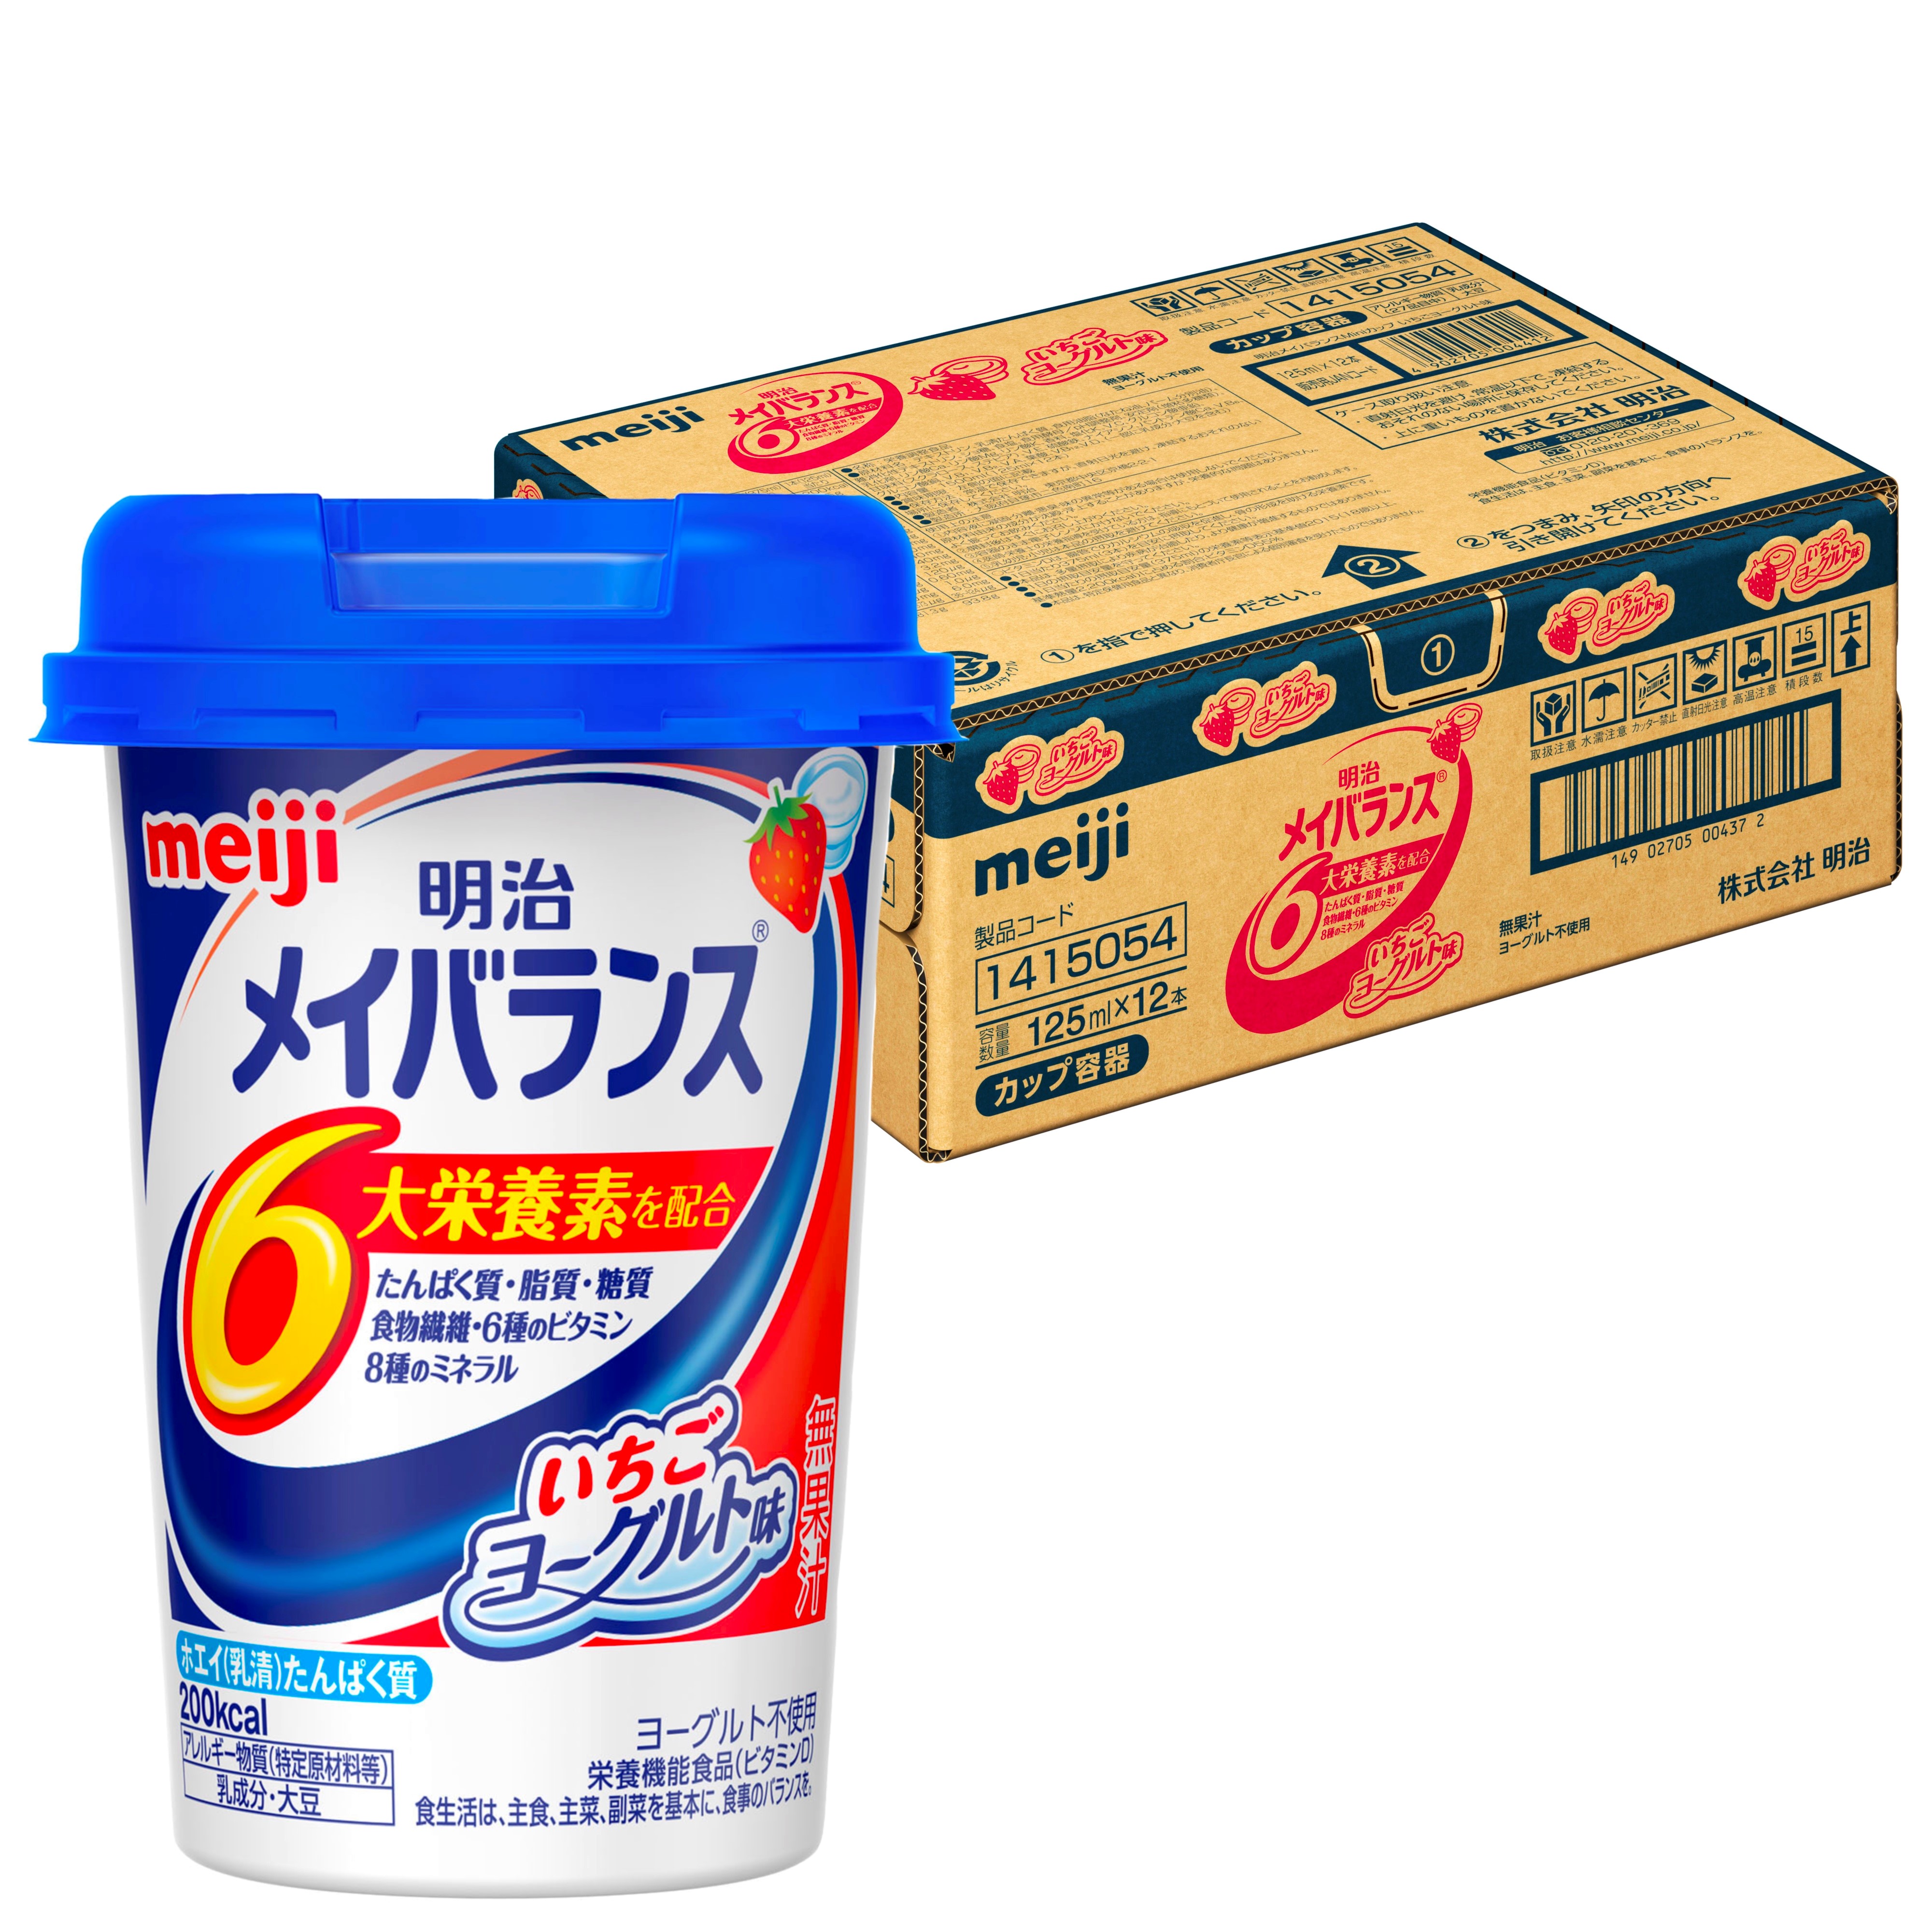 受賞店 明治 メイバランス ArgMiniカップ ミルク味 125mL×12本